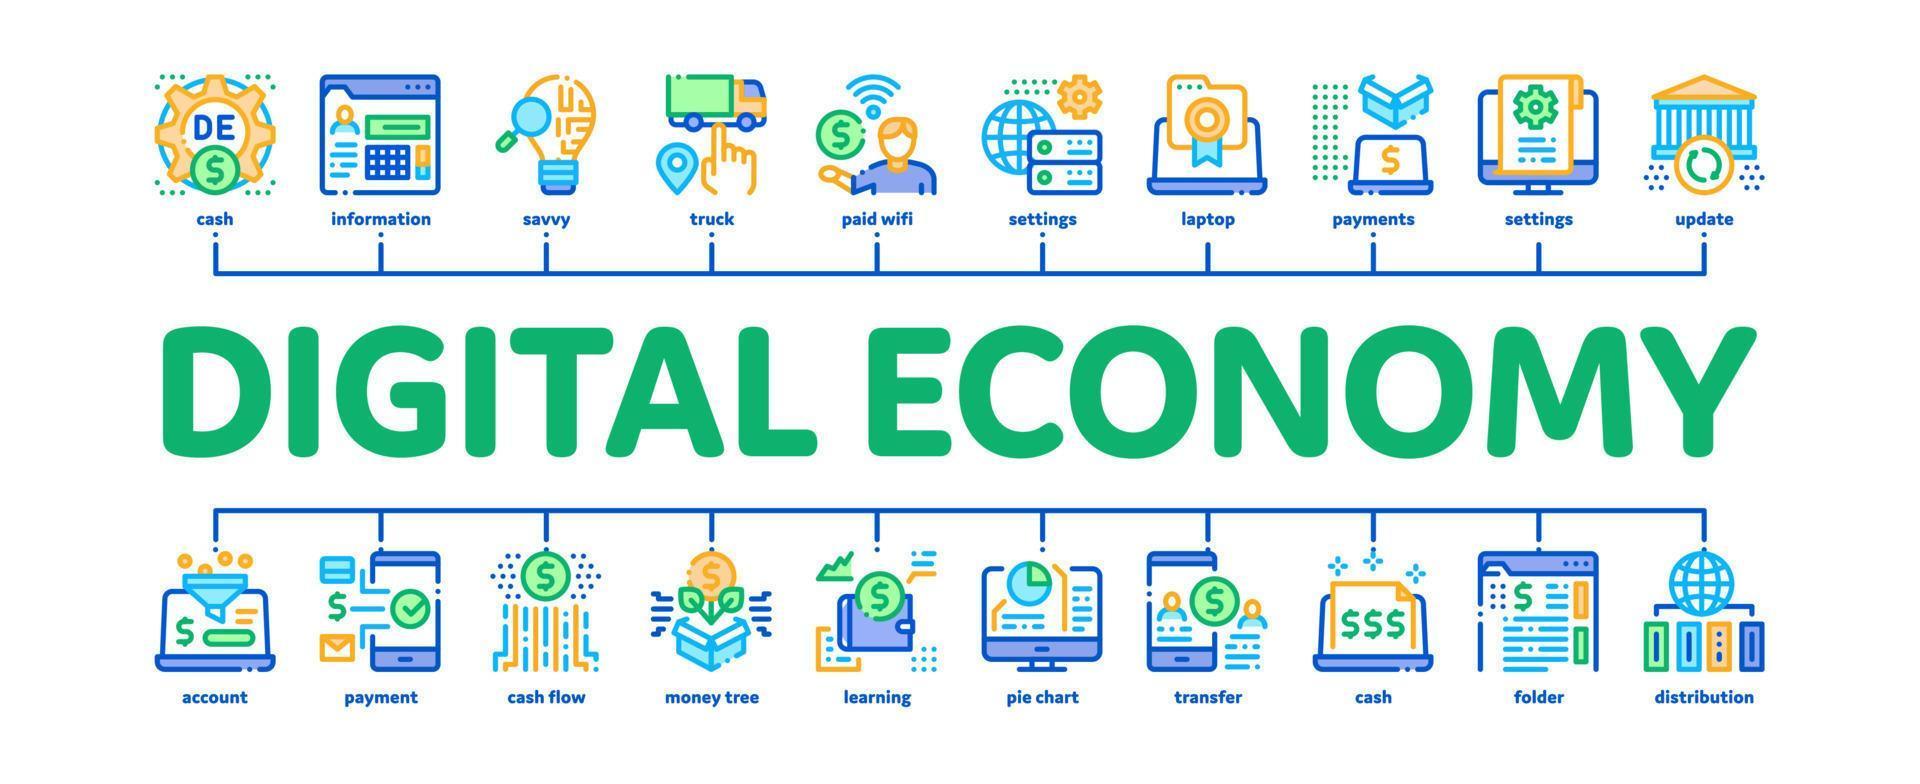 vector de banner infográfico mínimo de economía digital y comercio electrónico